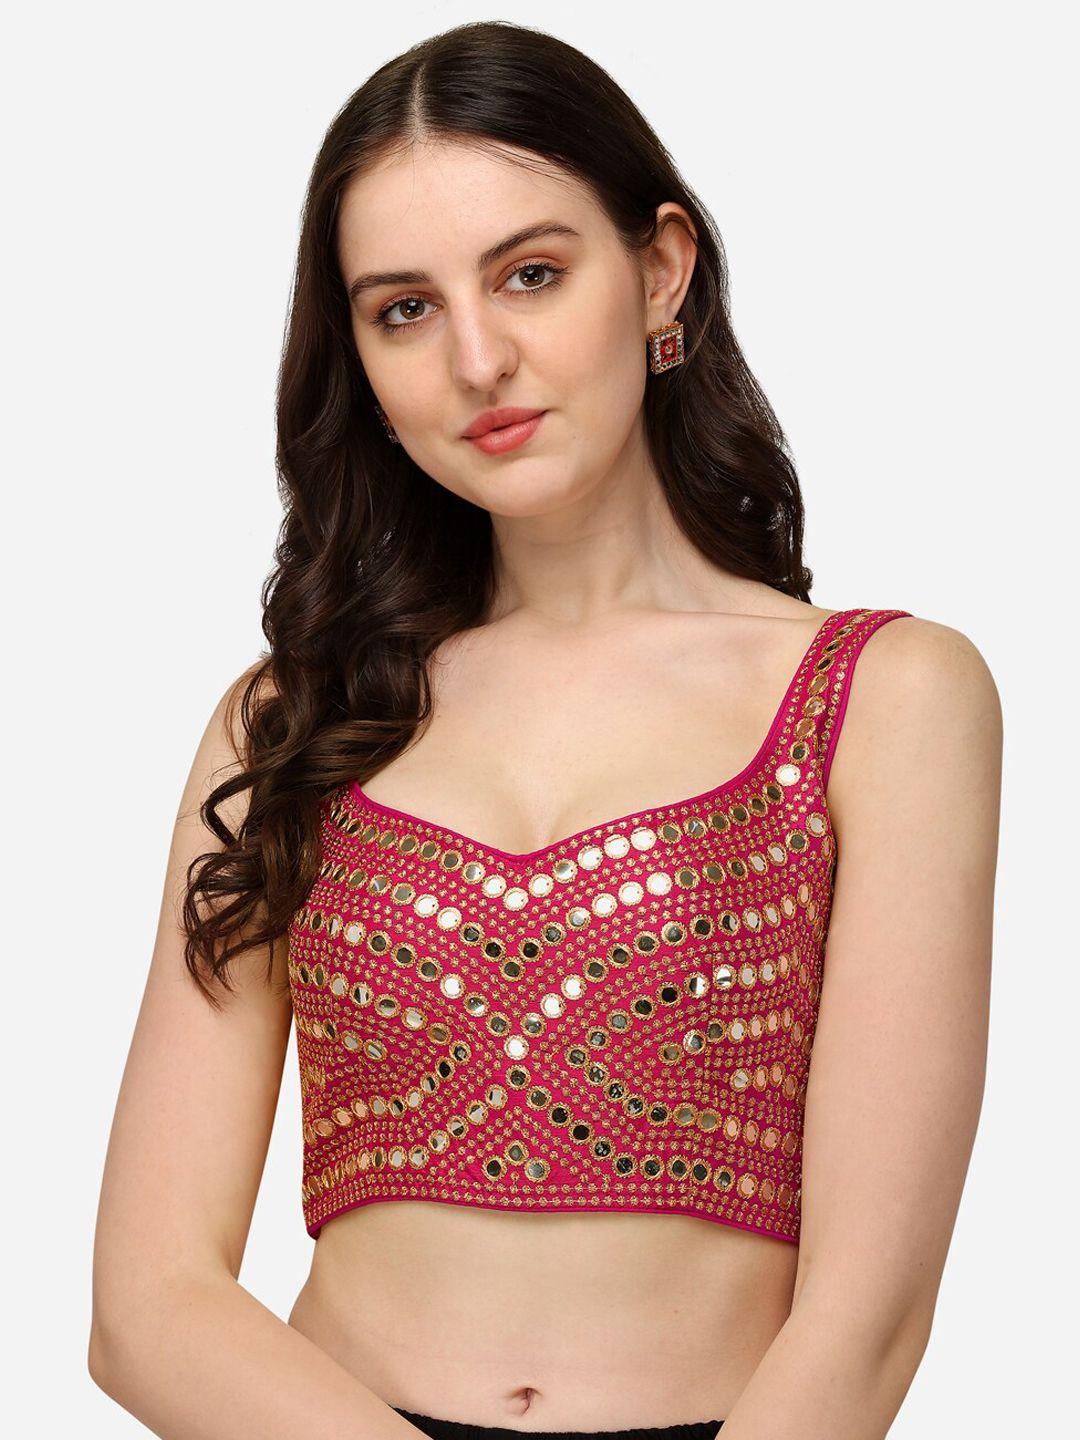 fab dadu pink embroidered saree blouse